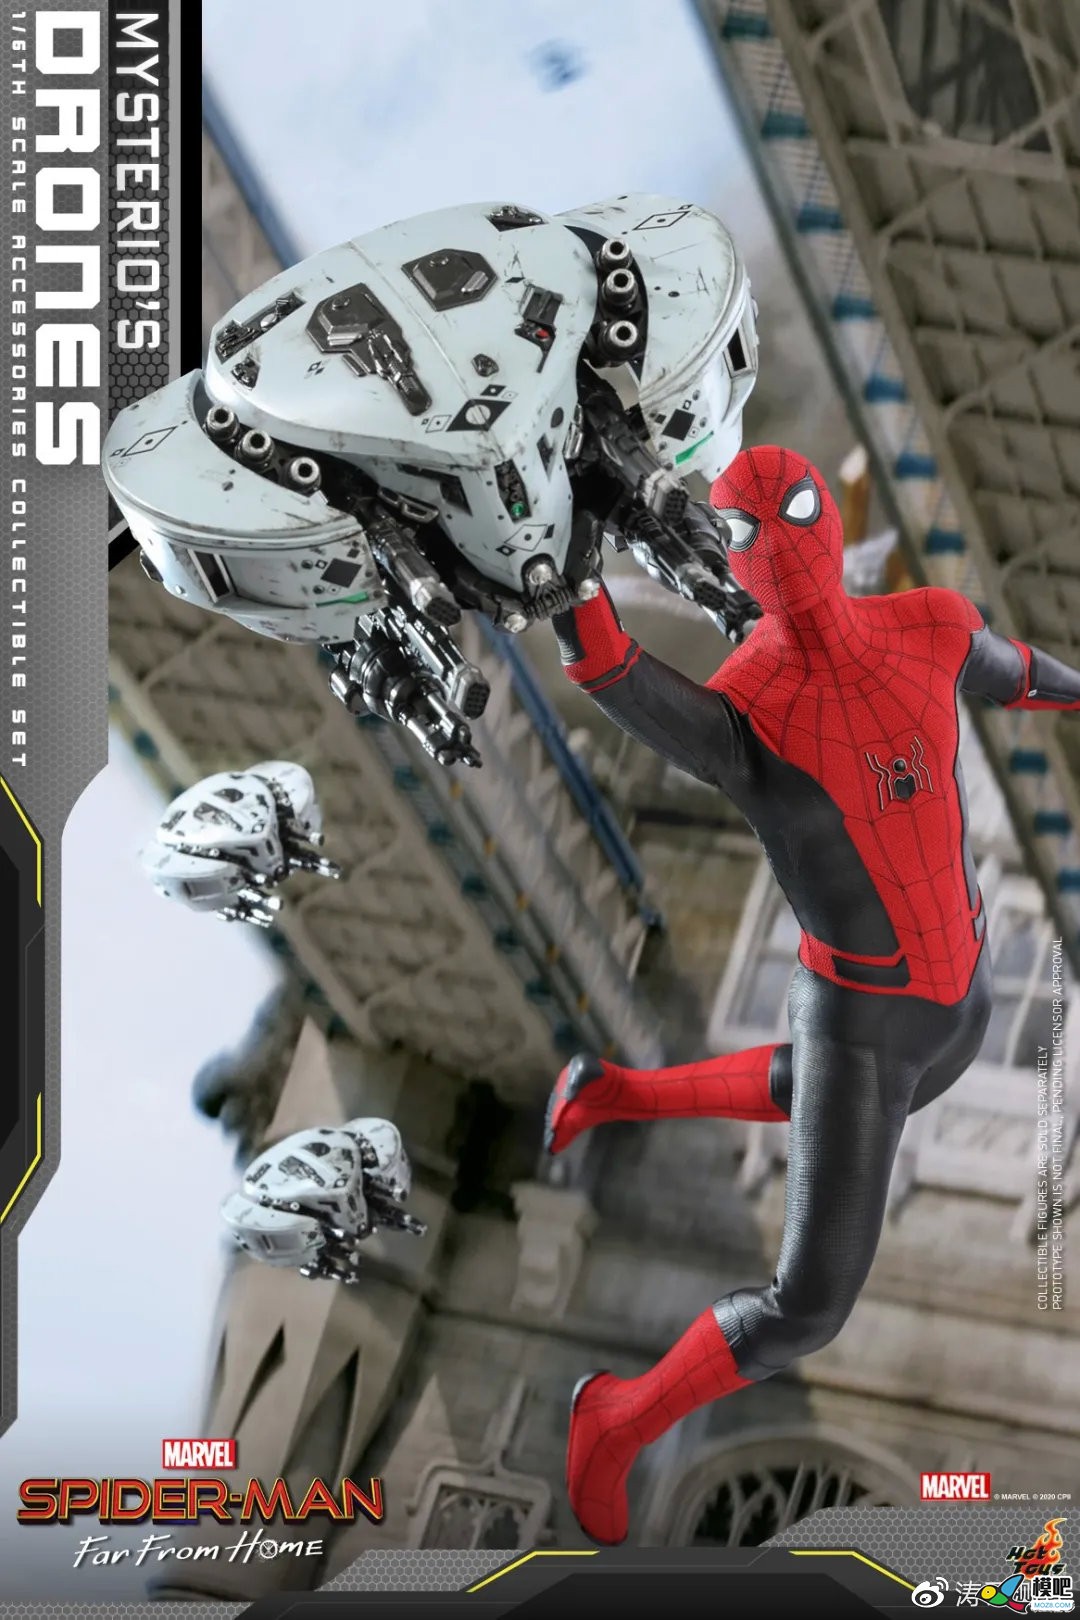 《蜘蛛侠: 英雄远征》中的无人机套装 无人机 作者:admin 1554 